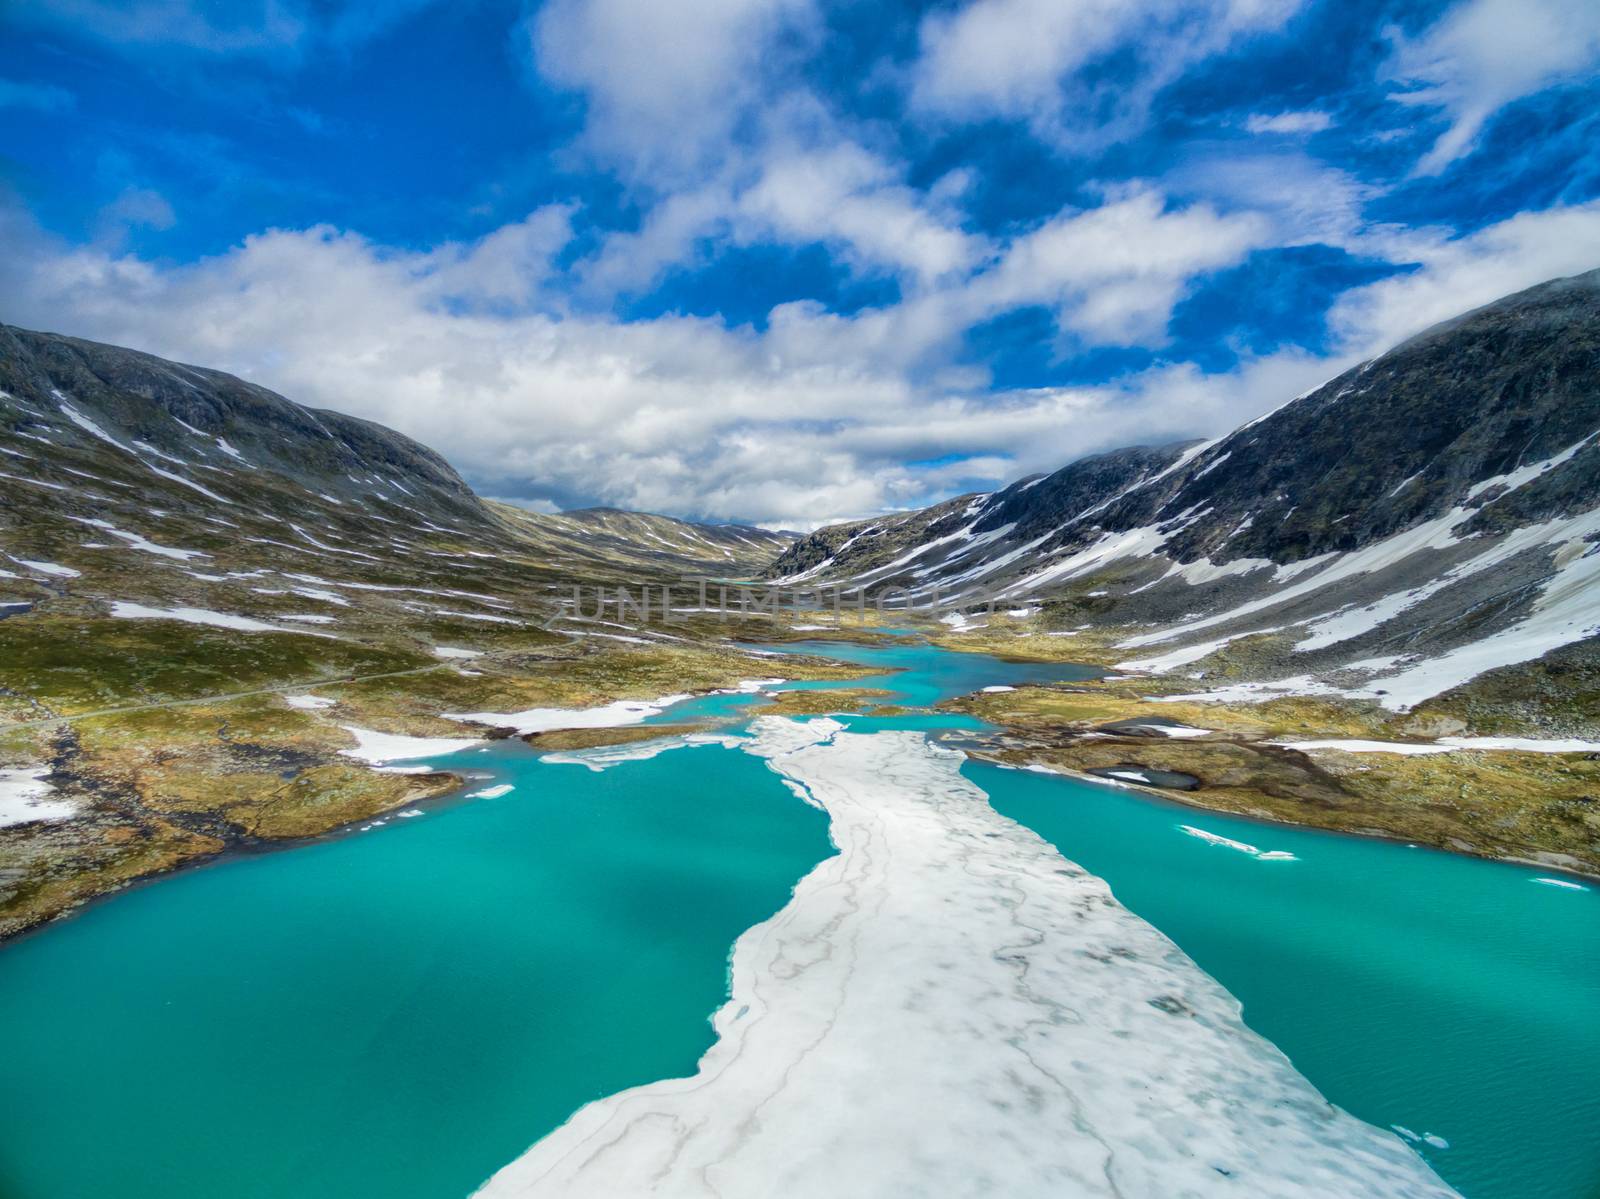 Norwegian mountain lake by Harvepino